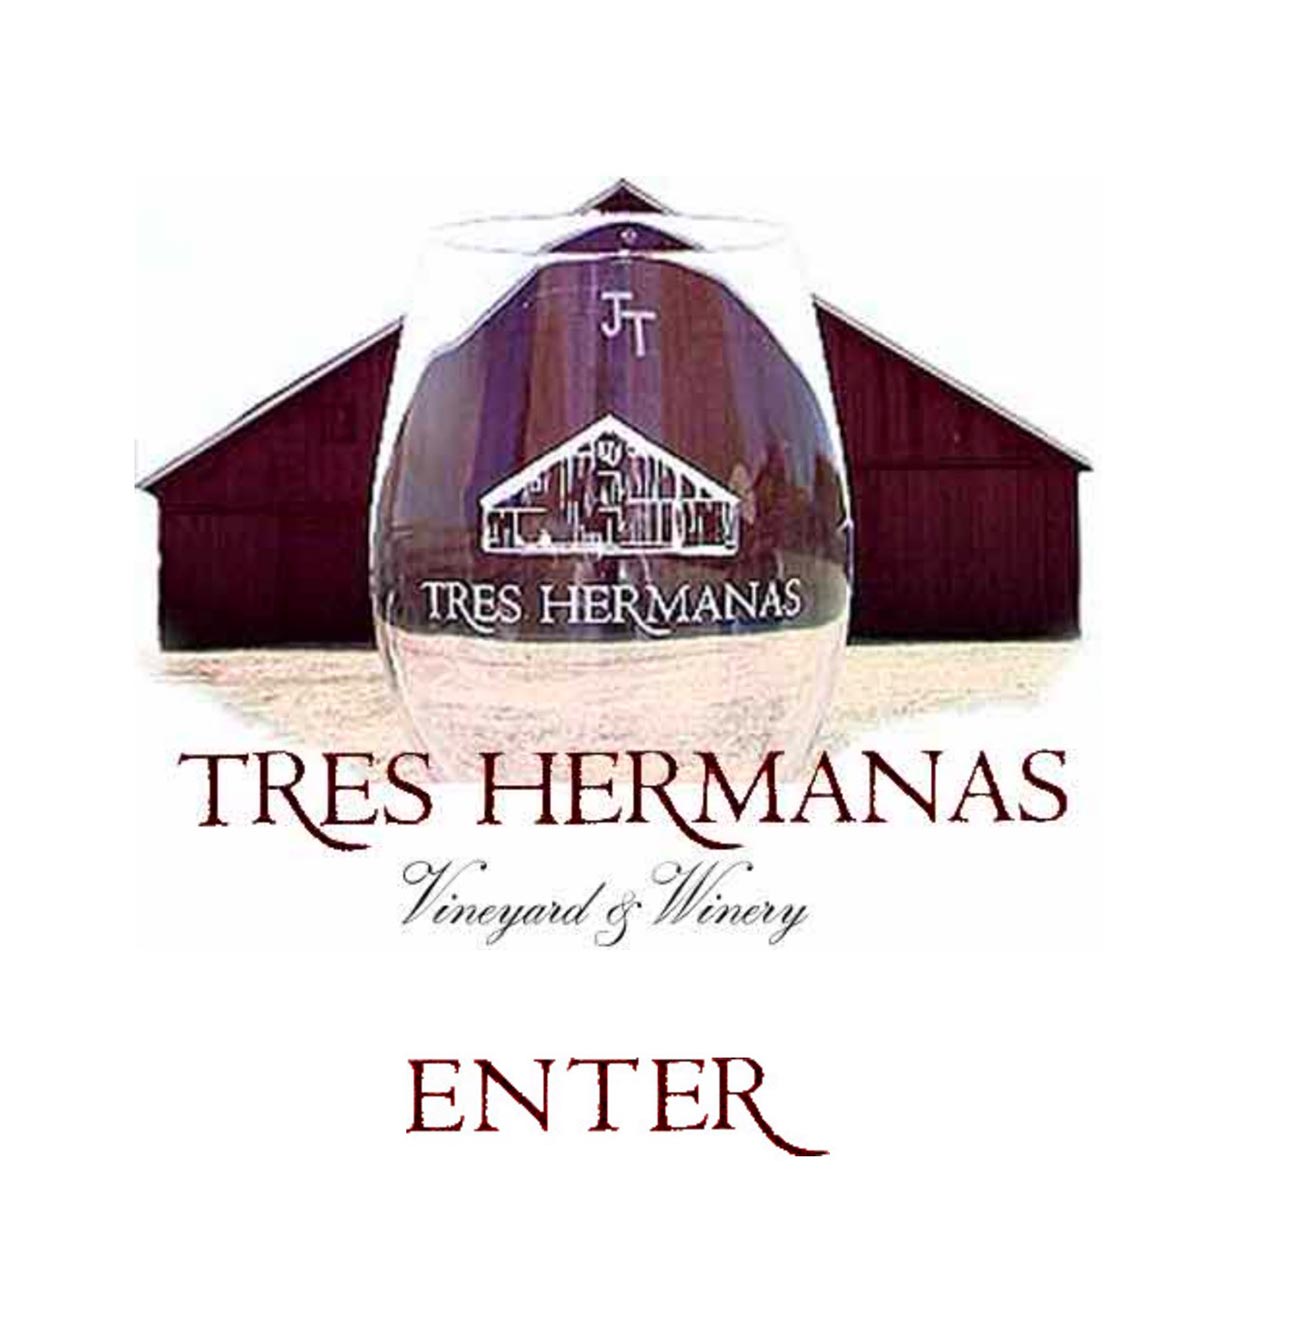 Treshermanas winery